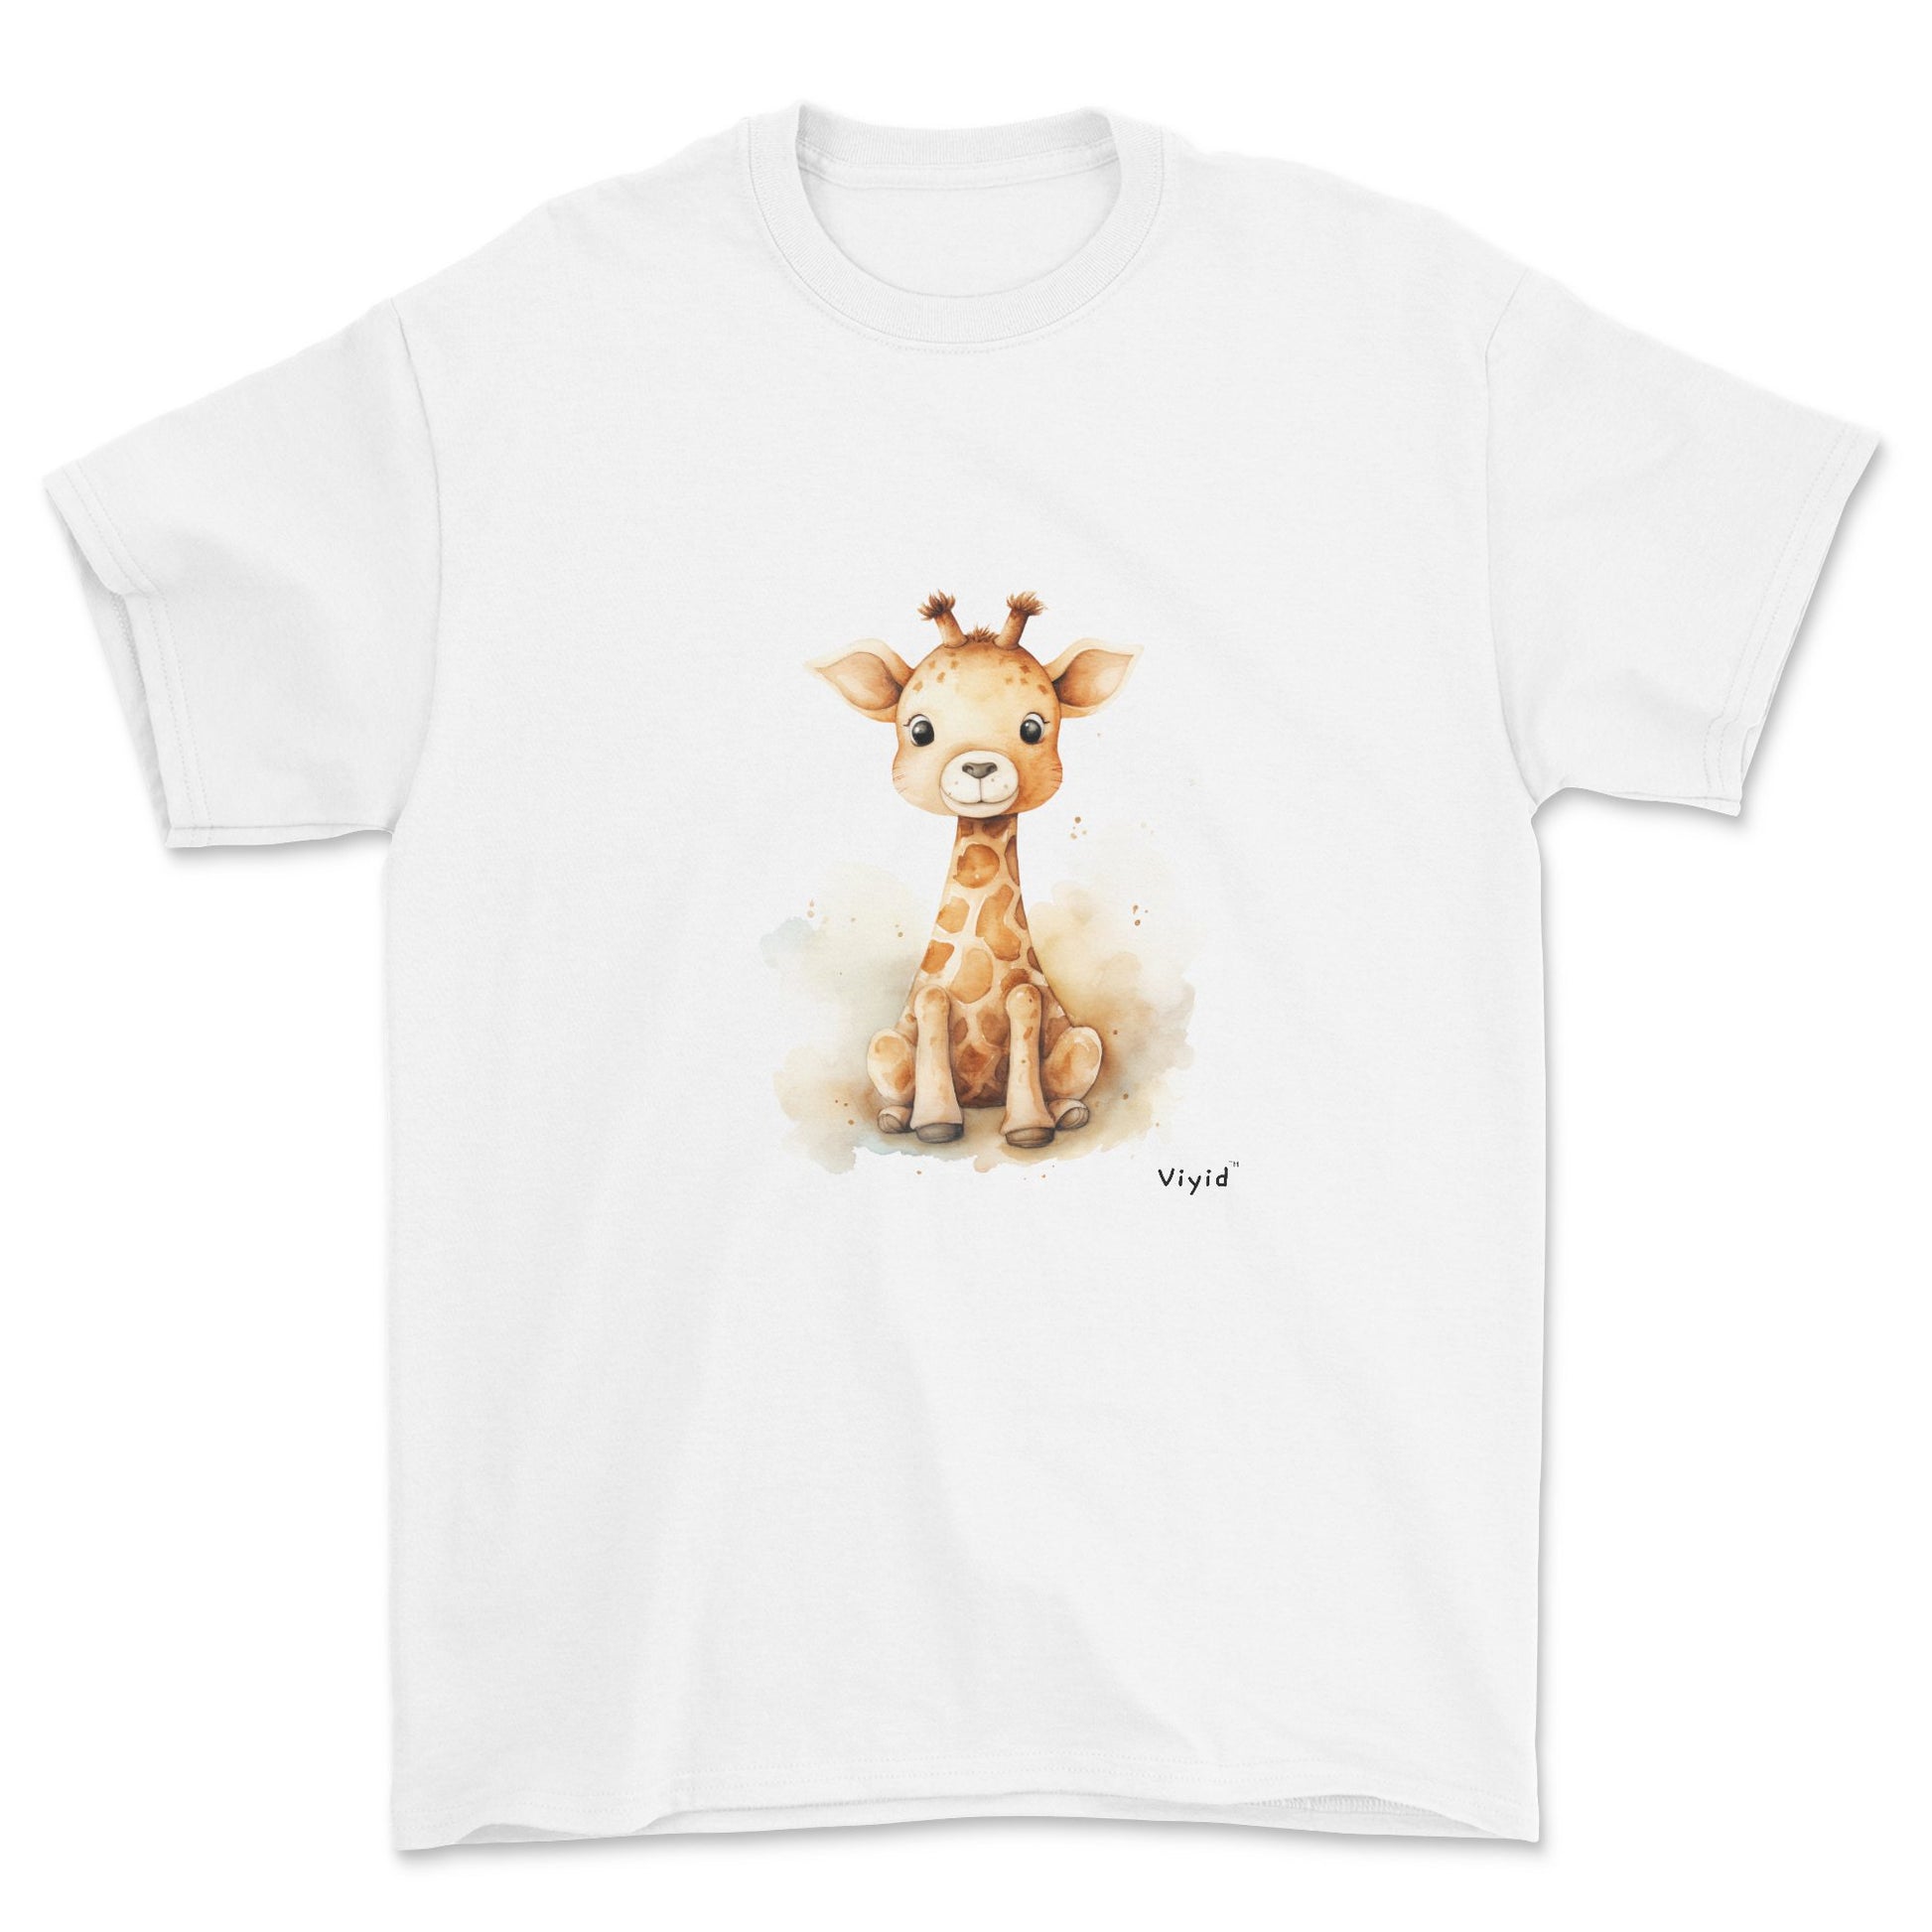 baby giraffe youth t-shirt white